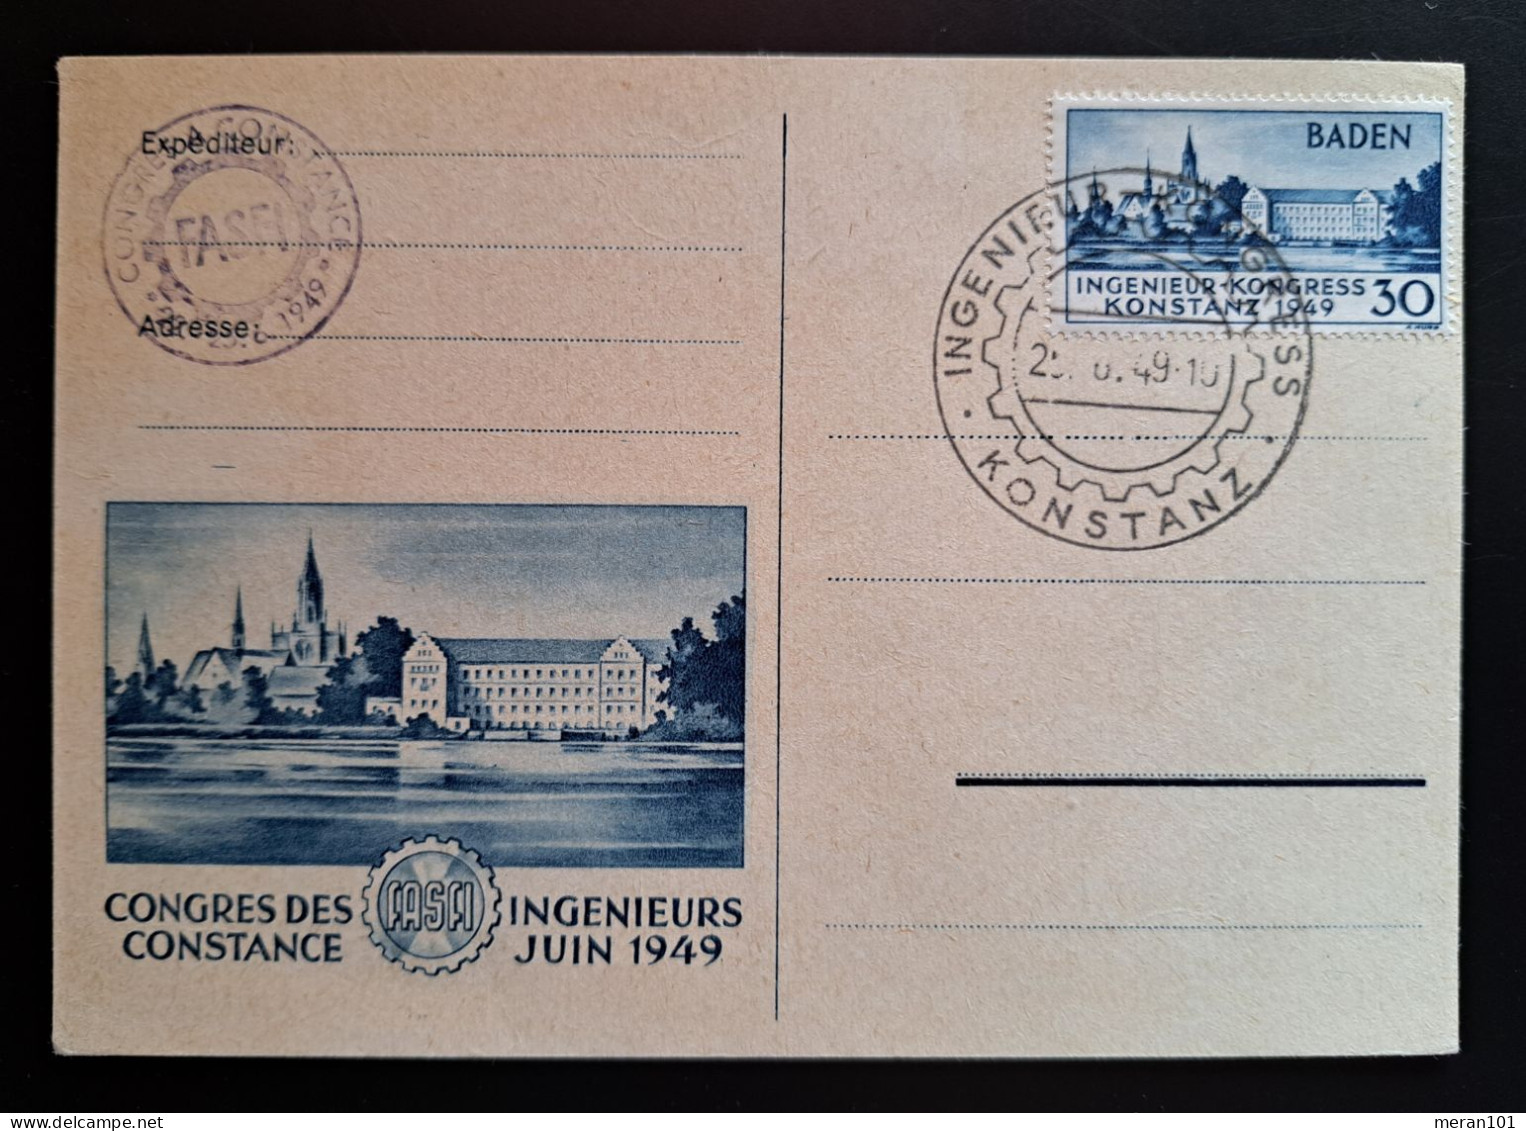 Baden 1949, Postkarte Mi 46 Konstanz Geprüft Schlegel - Bade